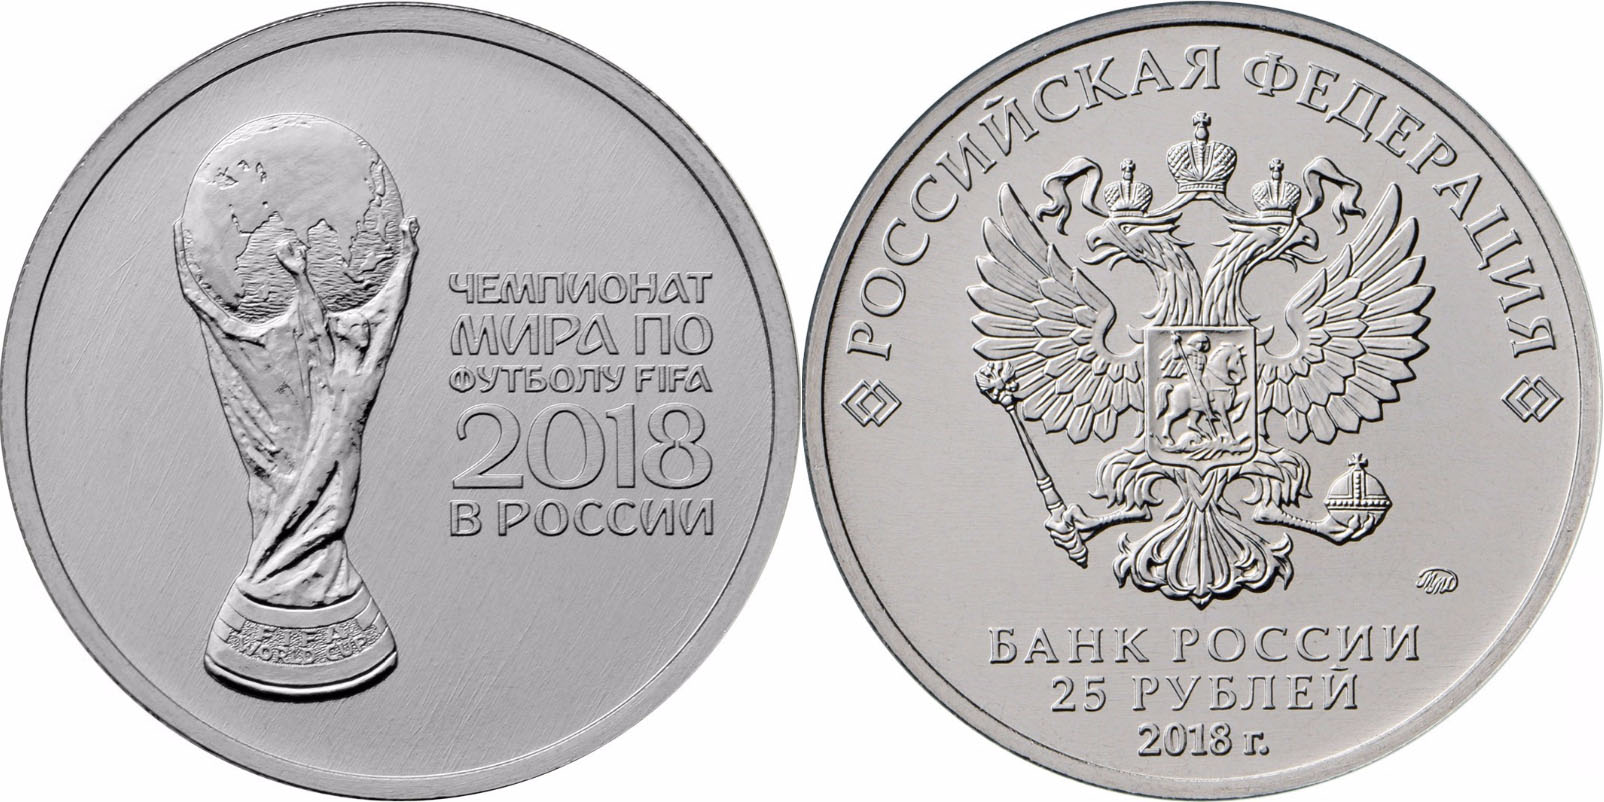 25-ти рублевые монеты России